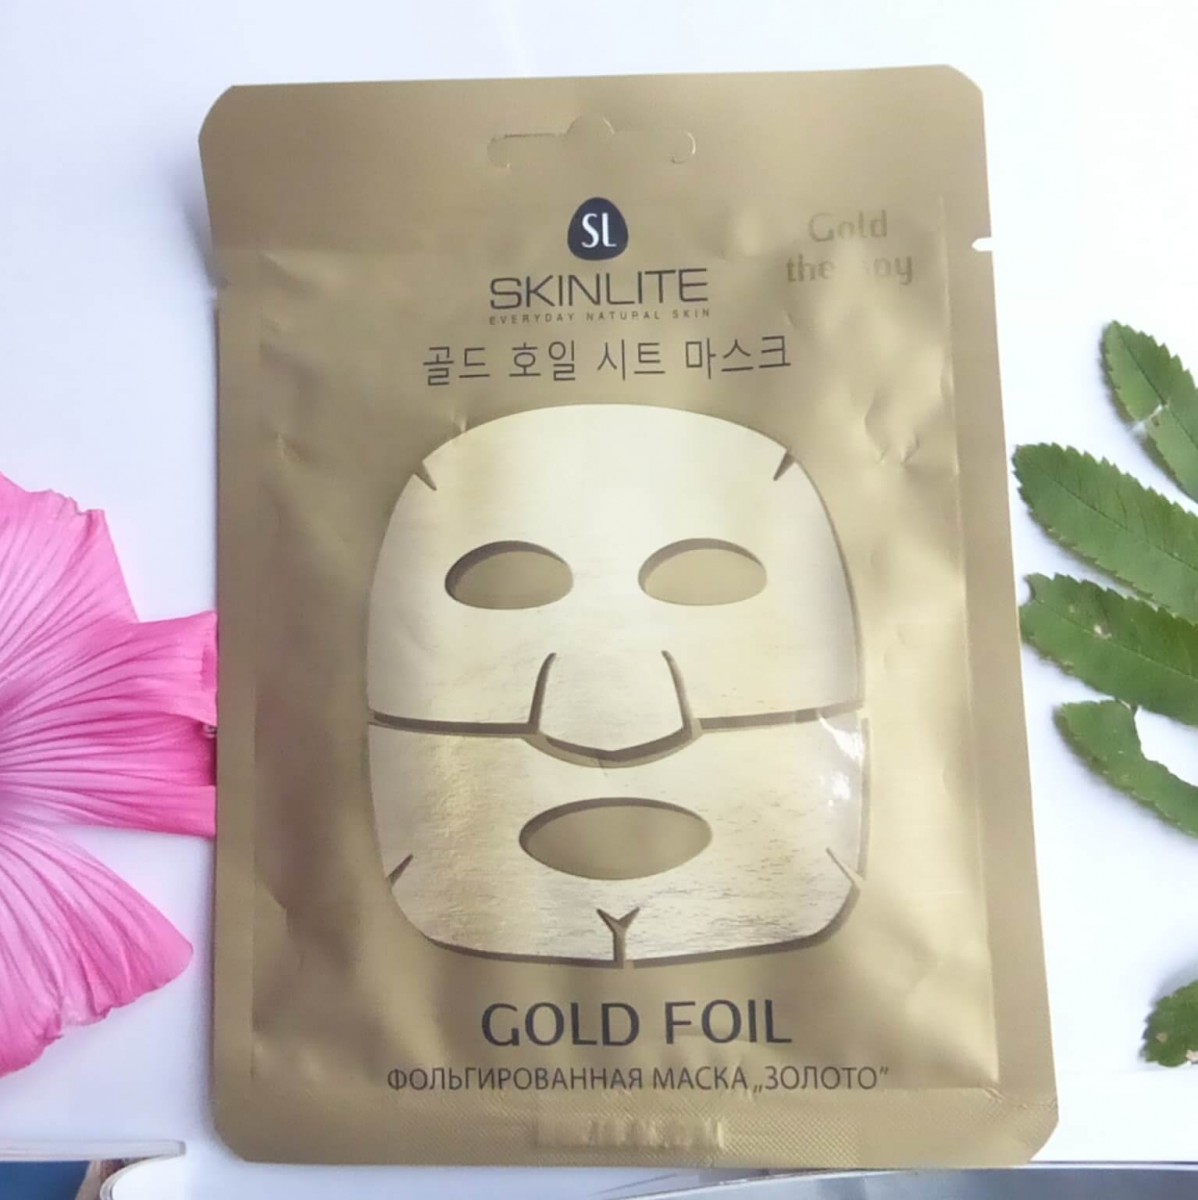 Gold Foil Mask [Skinlite]